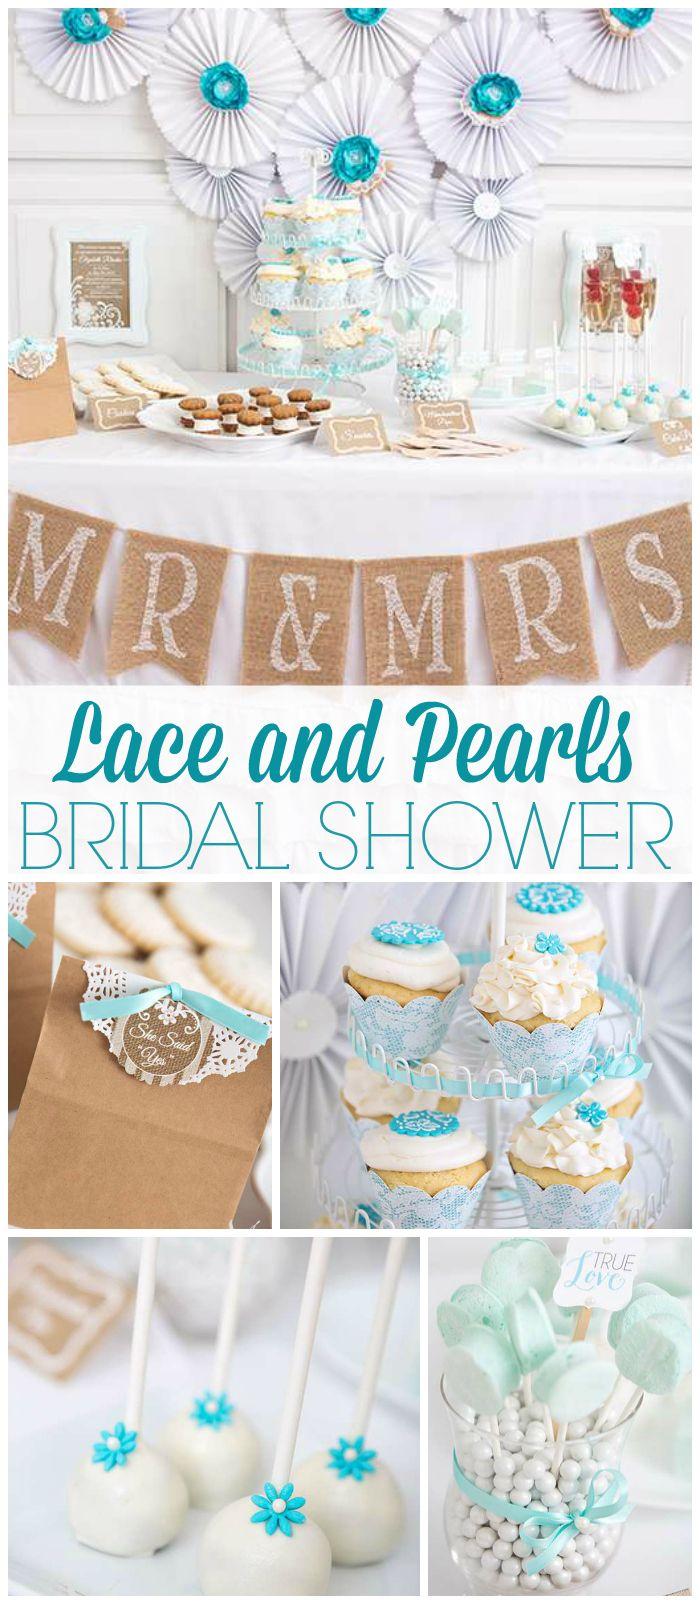 Wedding - Bridal Shower / Wedding Shower / Bridal/Wedding Shower "Lace And Pearls Bridal Shower"